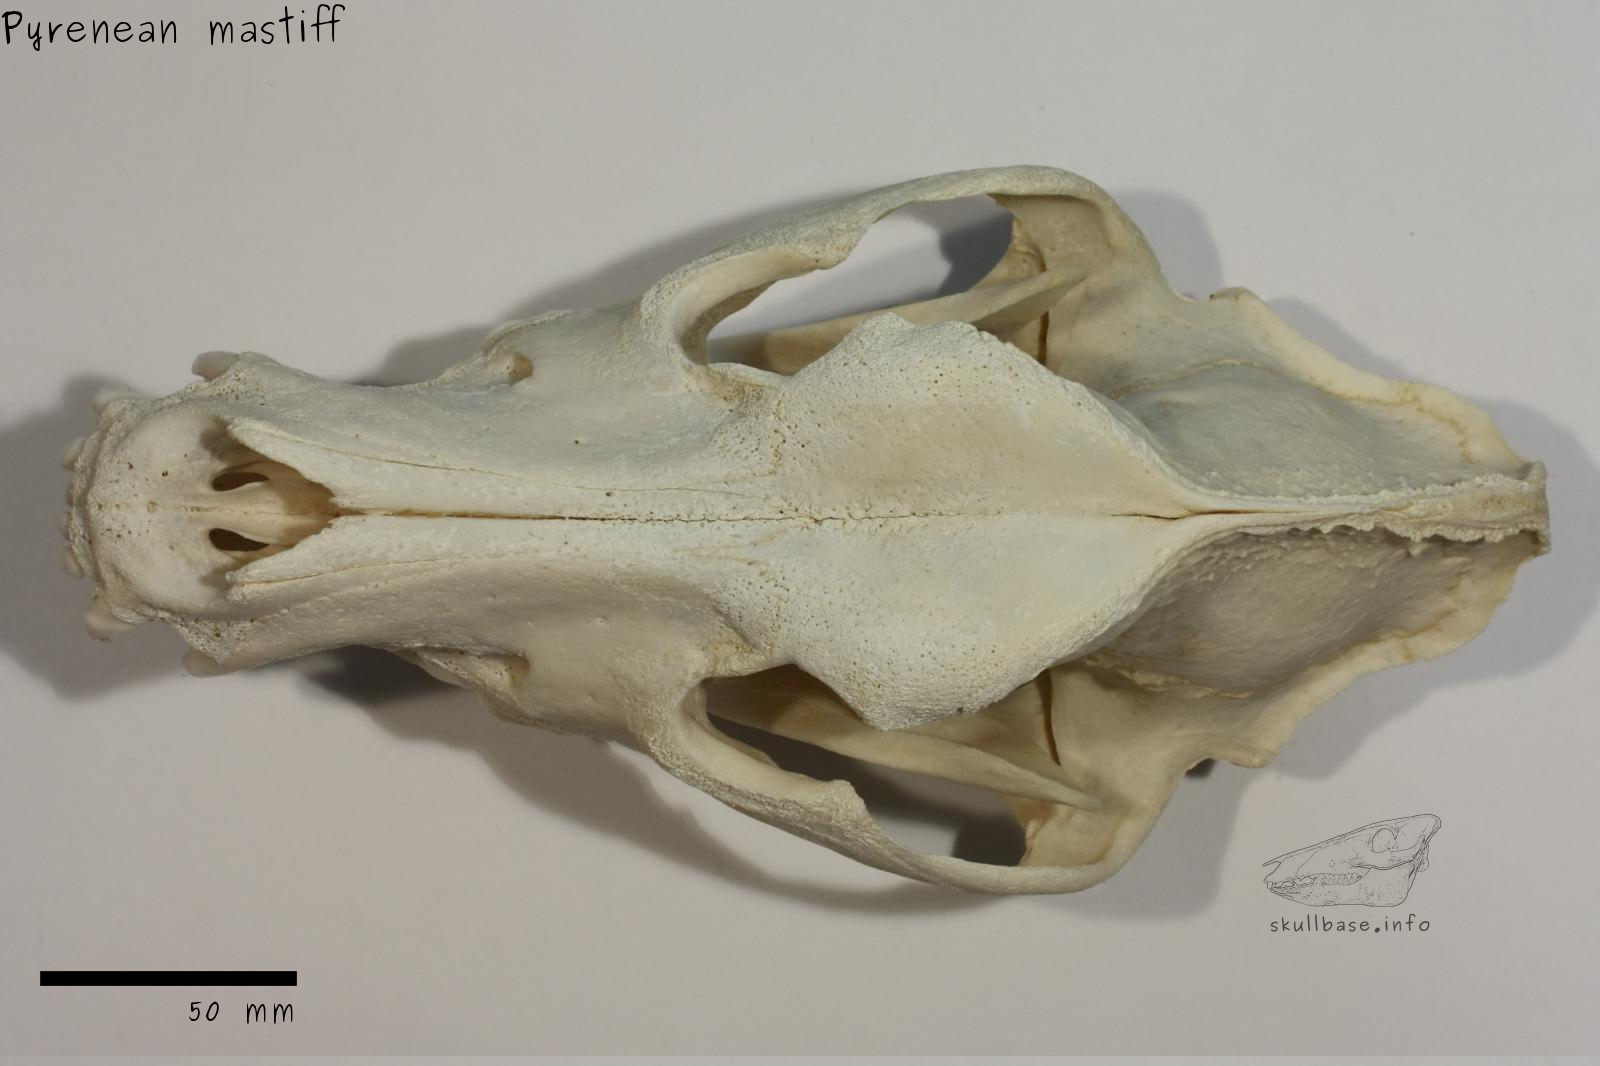 Pyrenean mastiff (Canis lupus familiaris) skull dorsal view